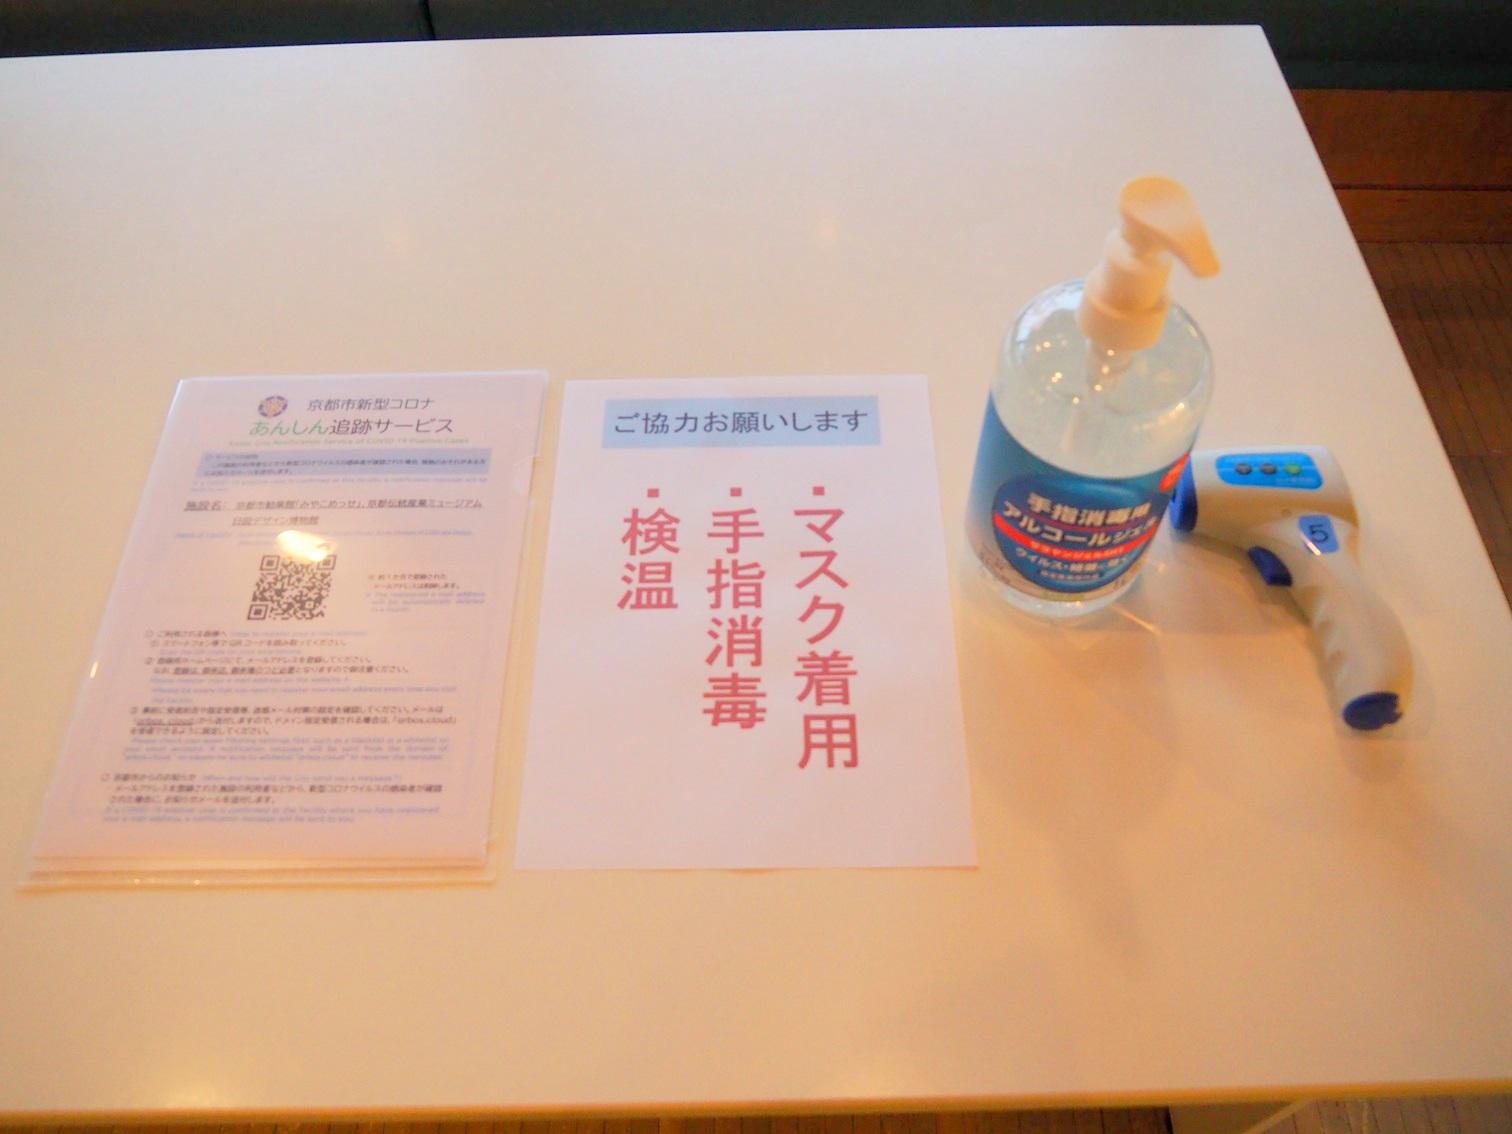 受付の様子<br>手指消毒液の設置、体温測定のほか、京都市あんしん追跡サービスも表示して来場者に推奨